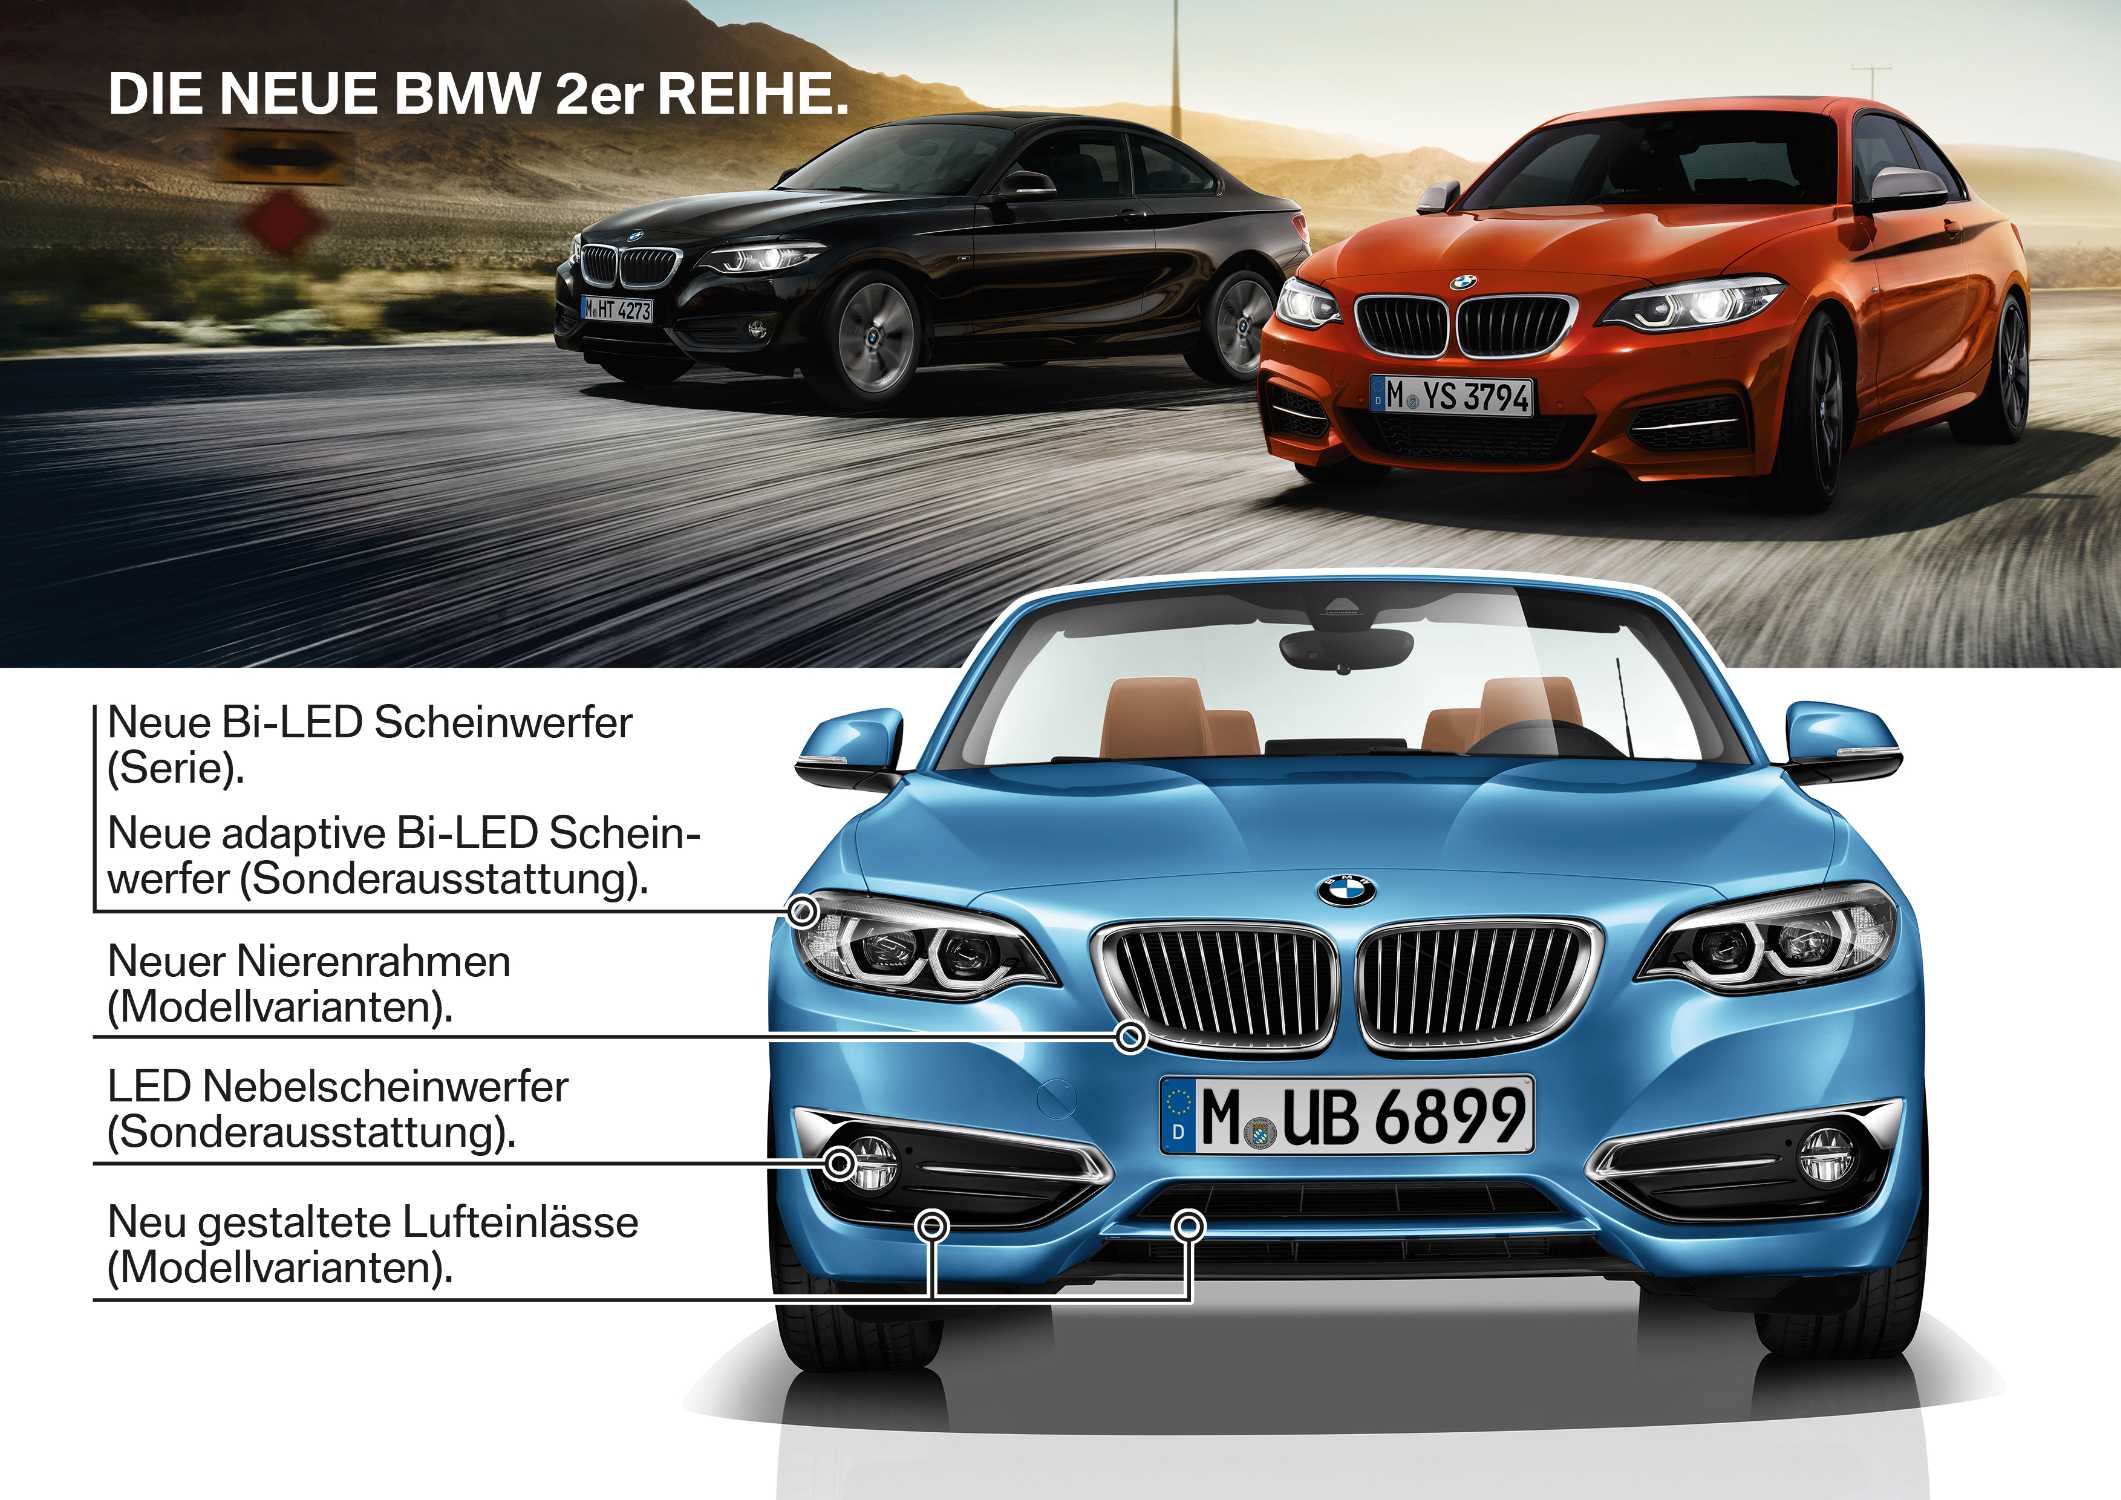 Die neue BMW 2er Reihe, Highlights (05/2017).